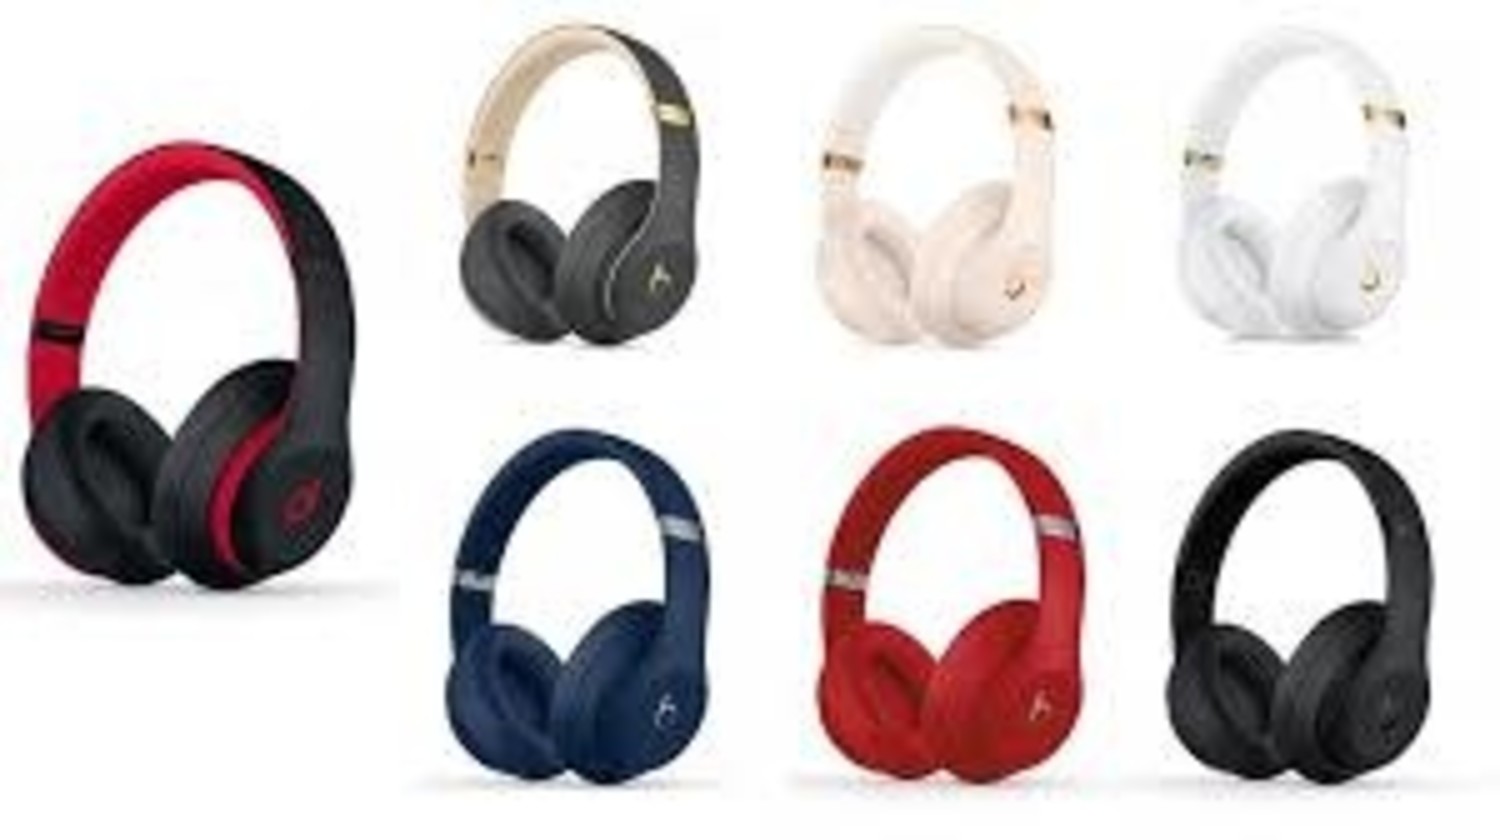 beats studio3 wireless headphones